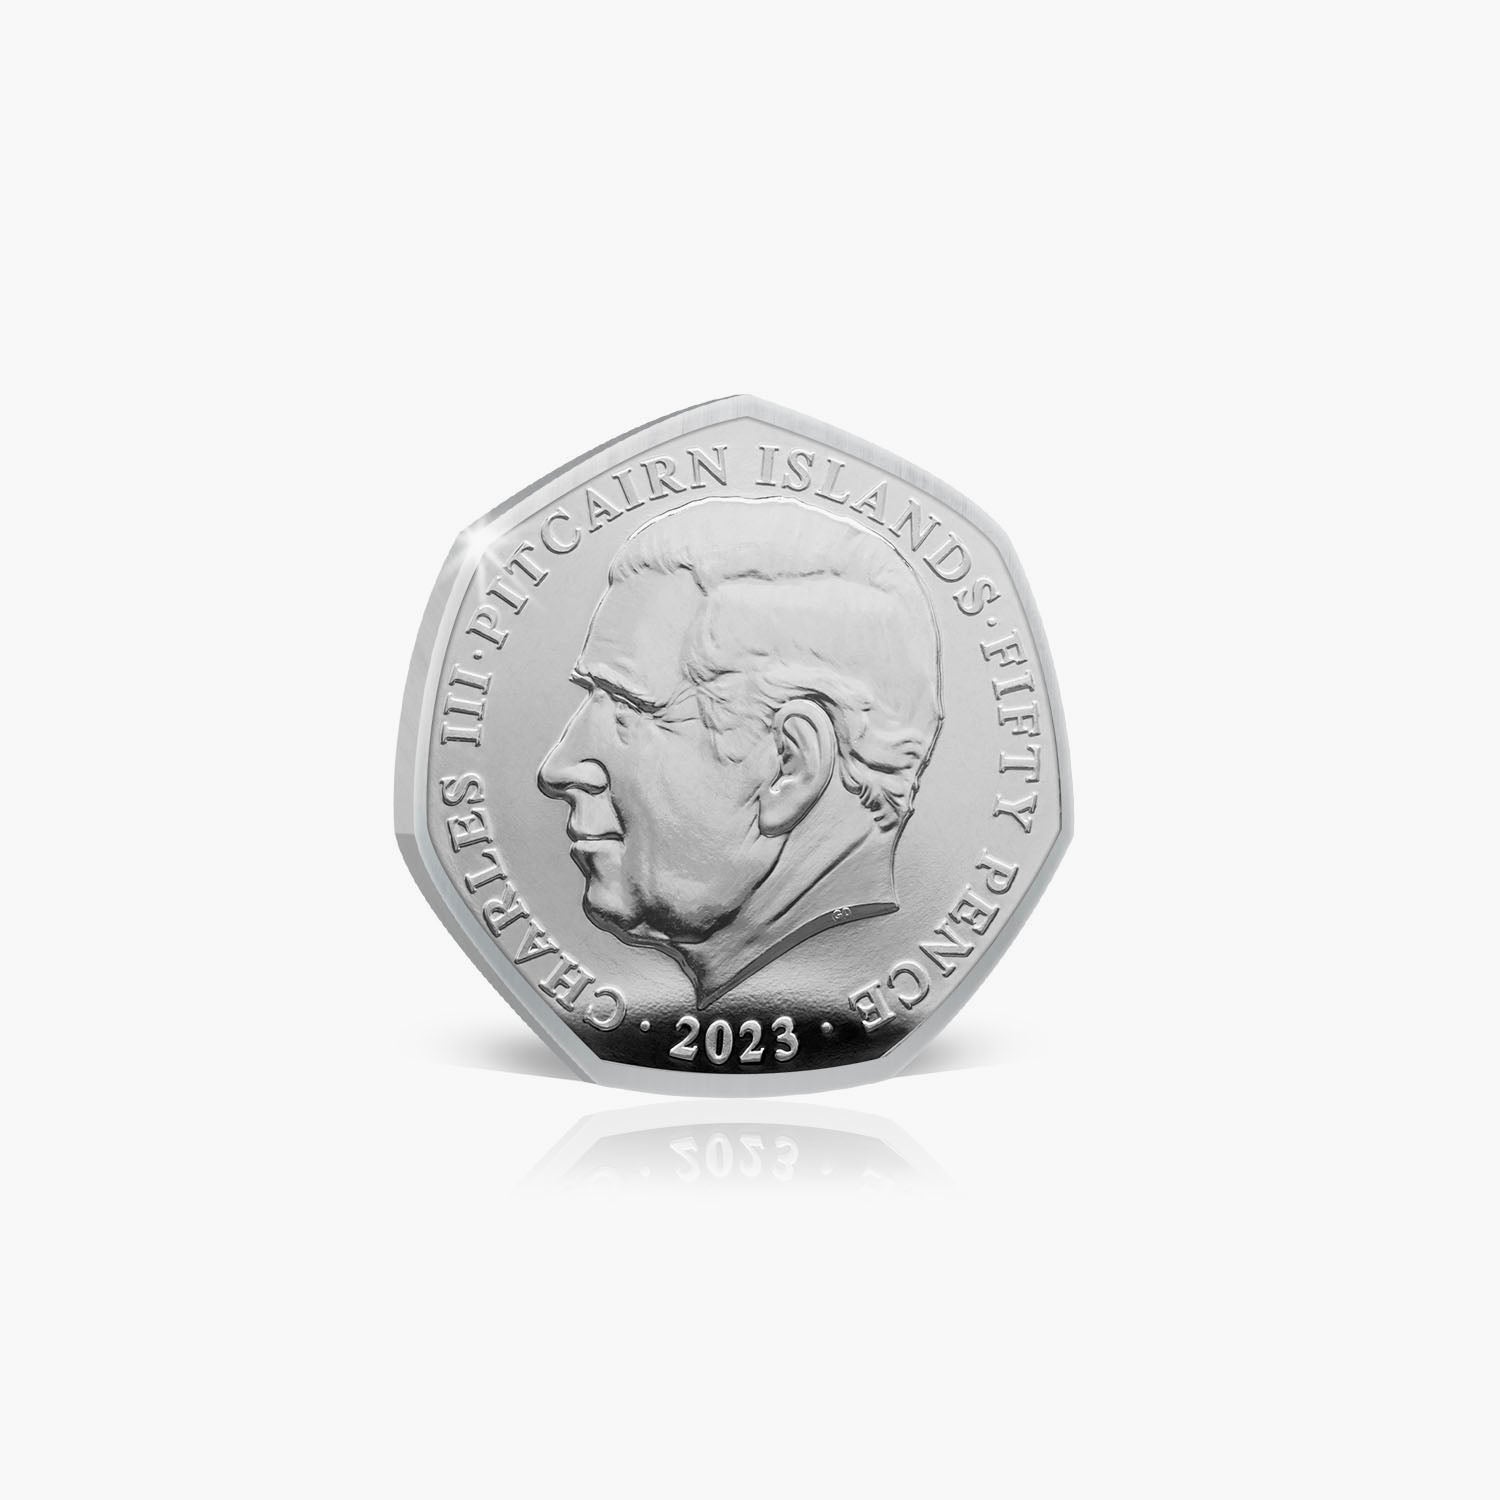 The 2023 World of Peter Rabbit Benjamin Bunny 50p BU Coin